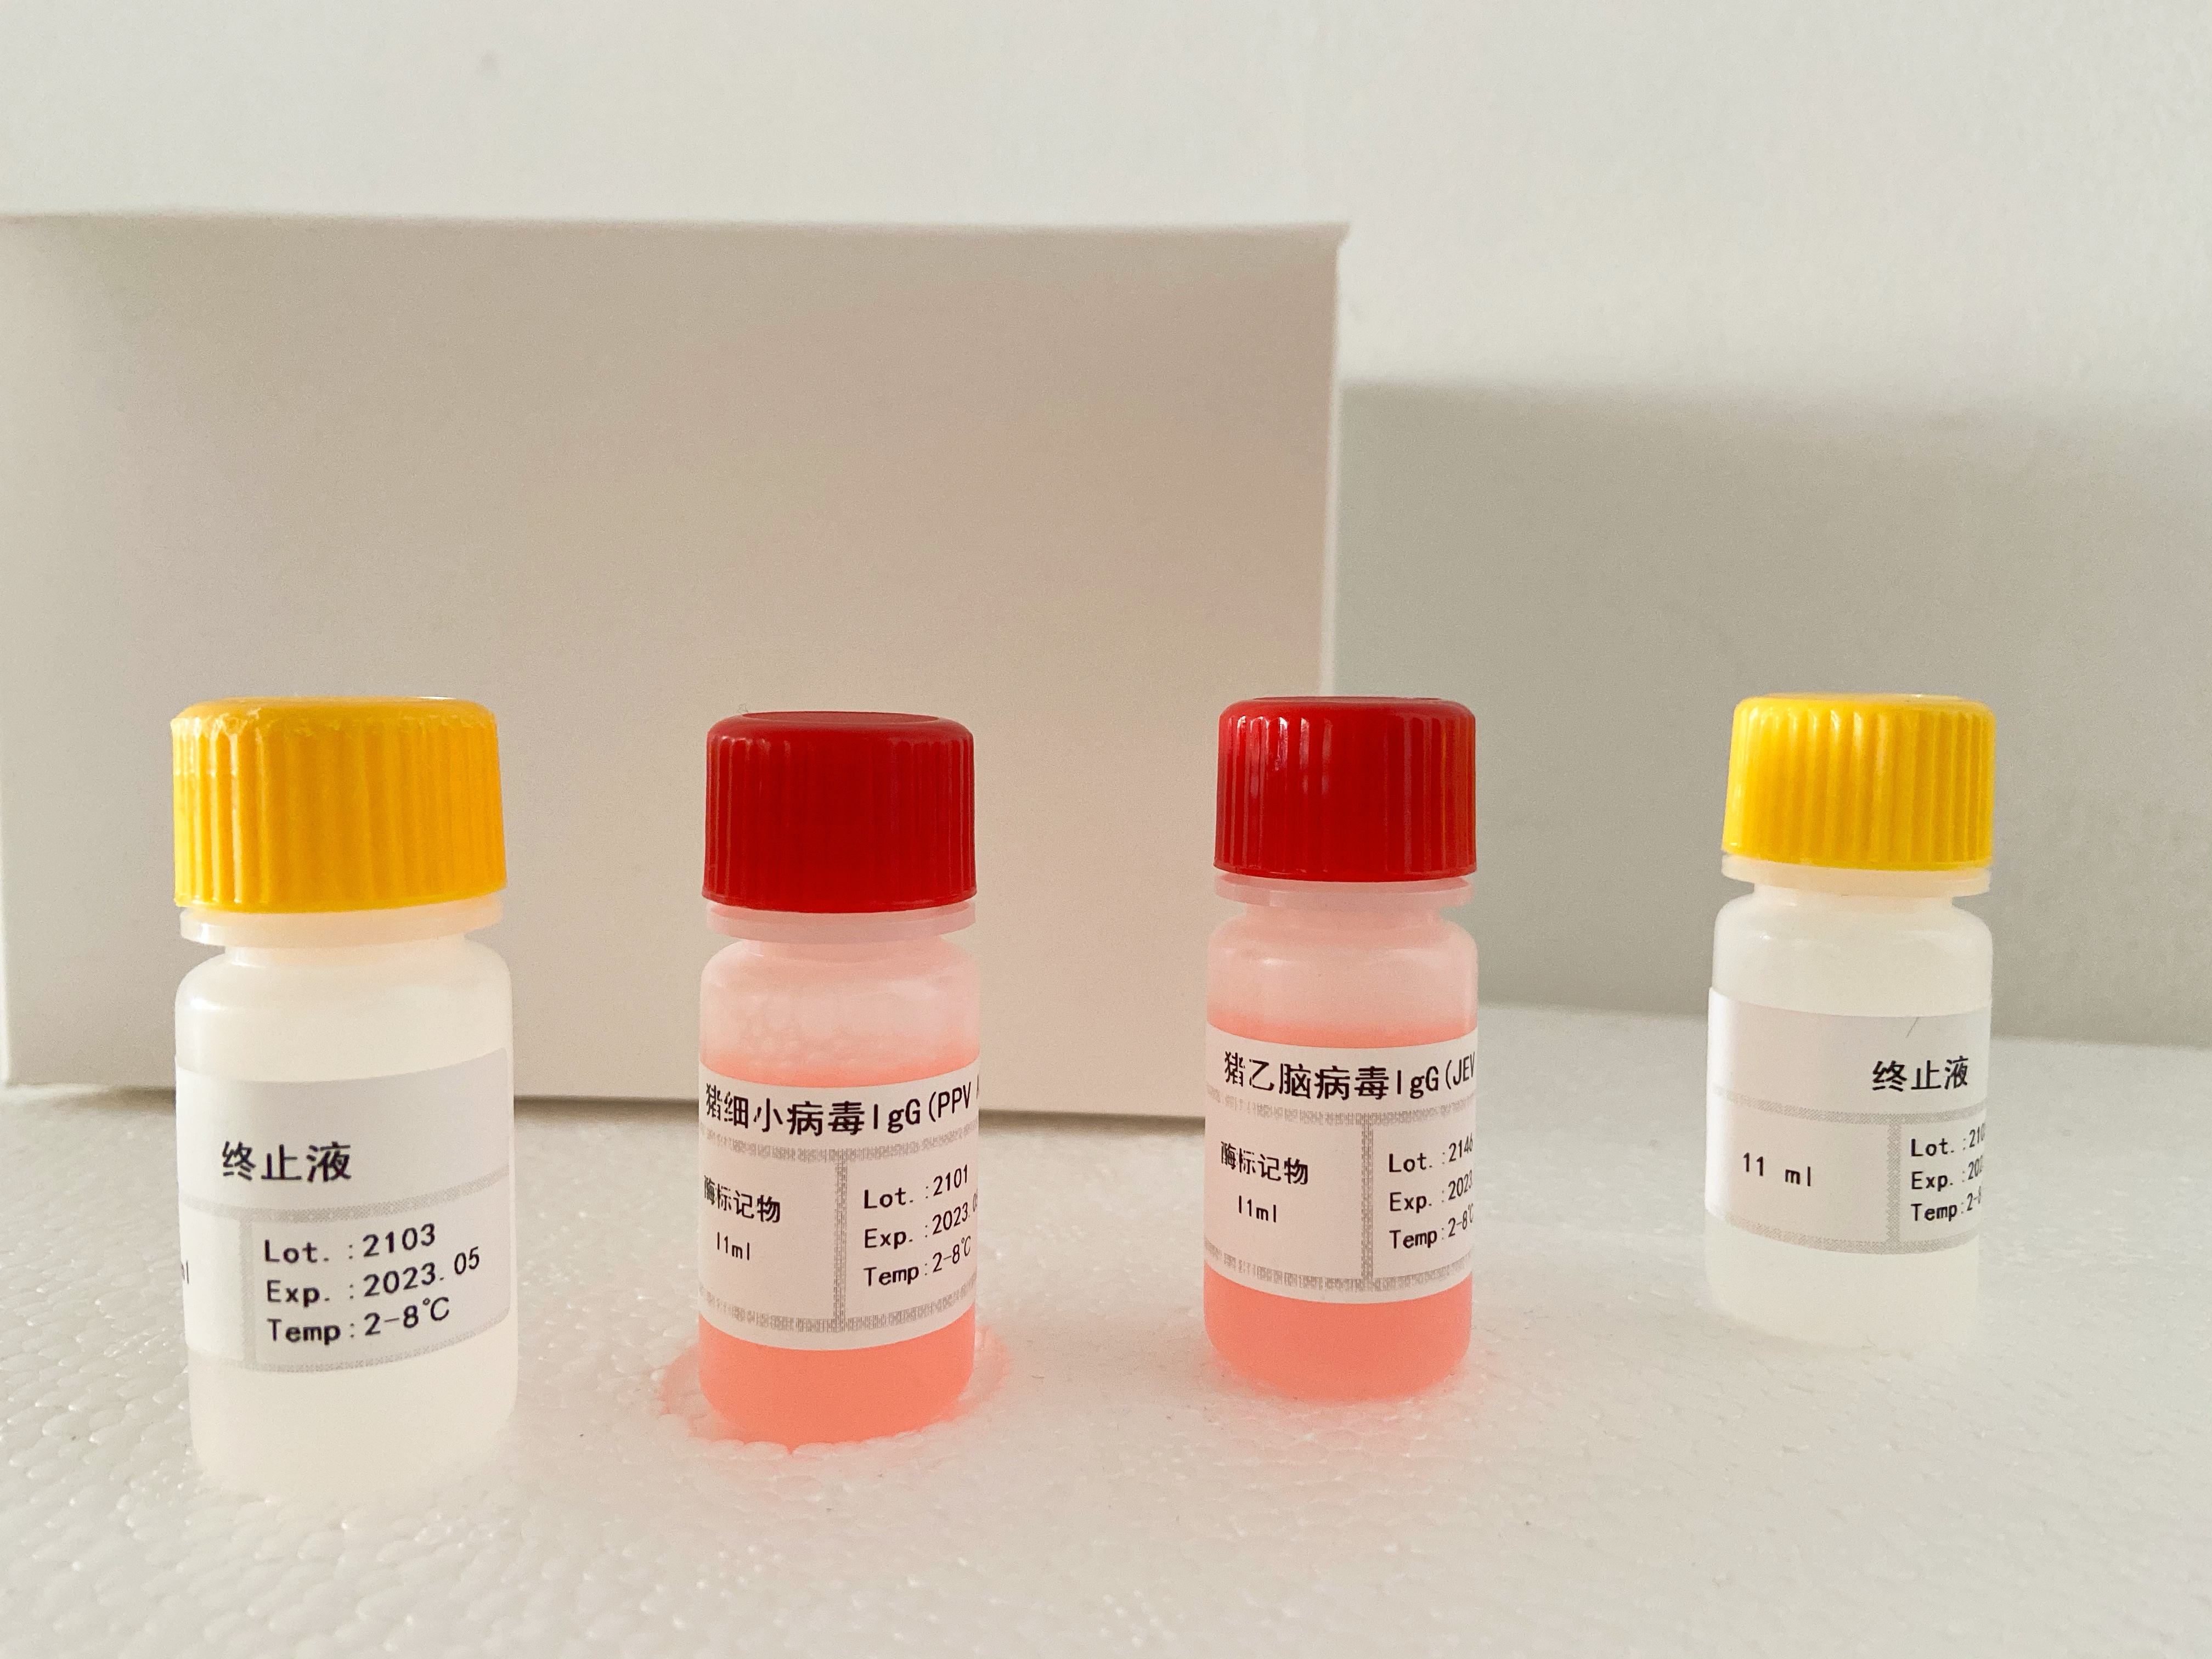 猪肌酸激酶(CK)检测试剂盒